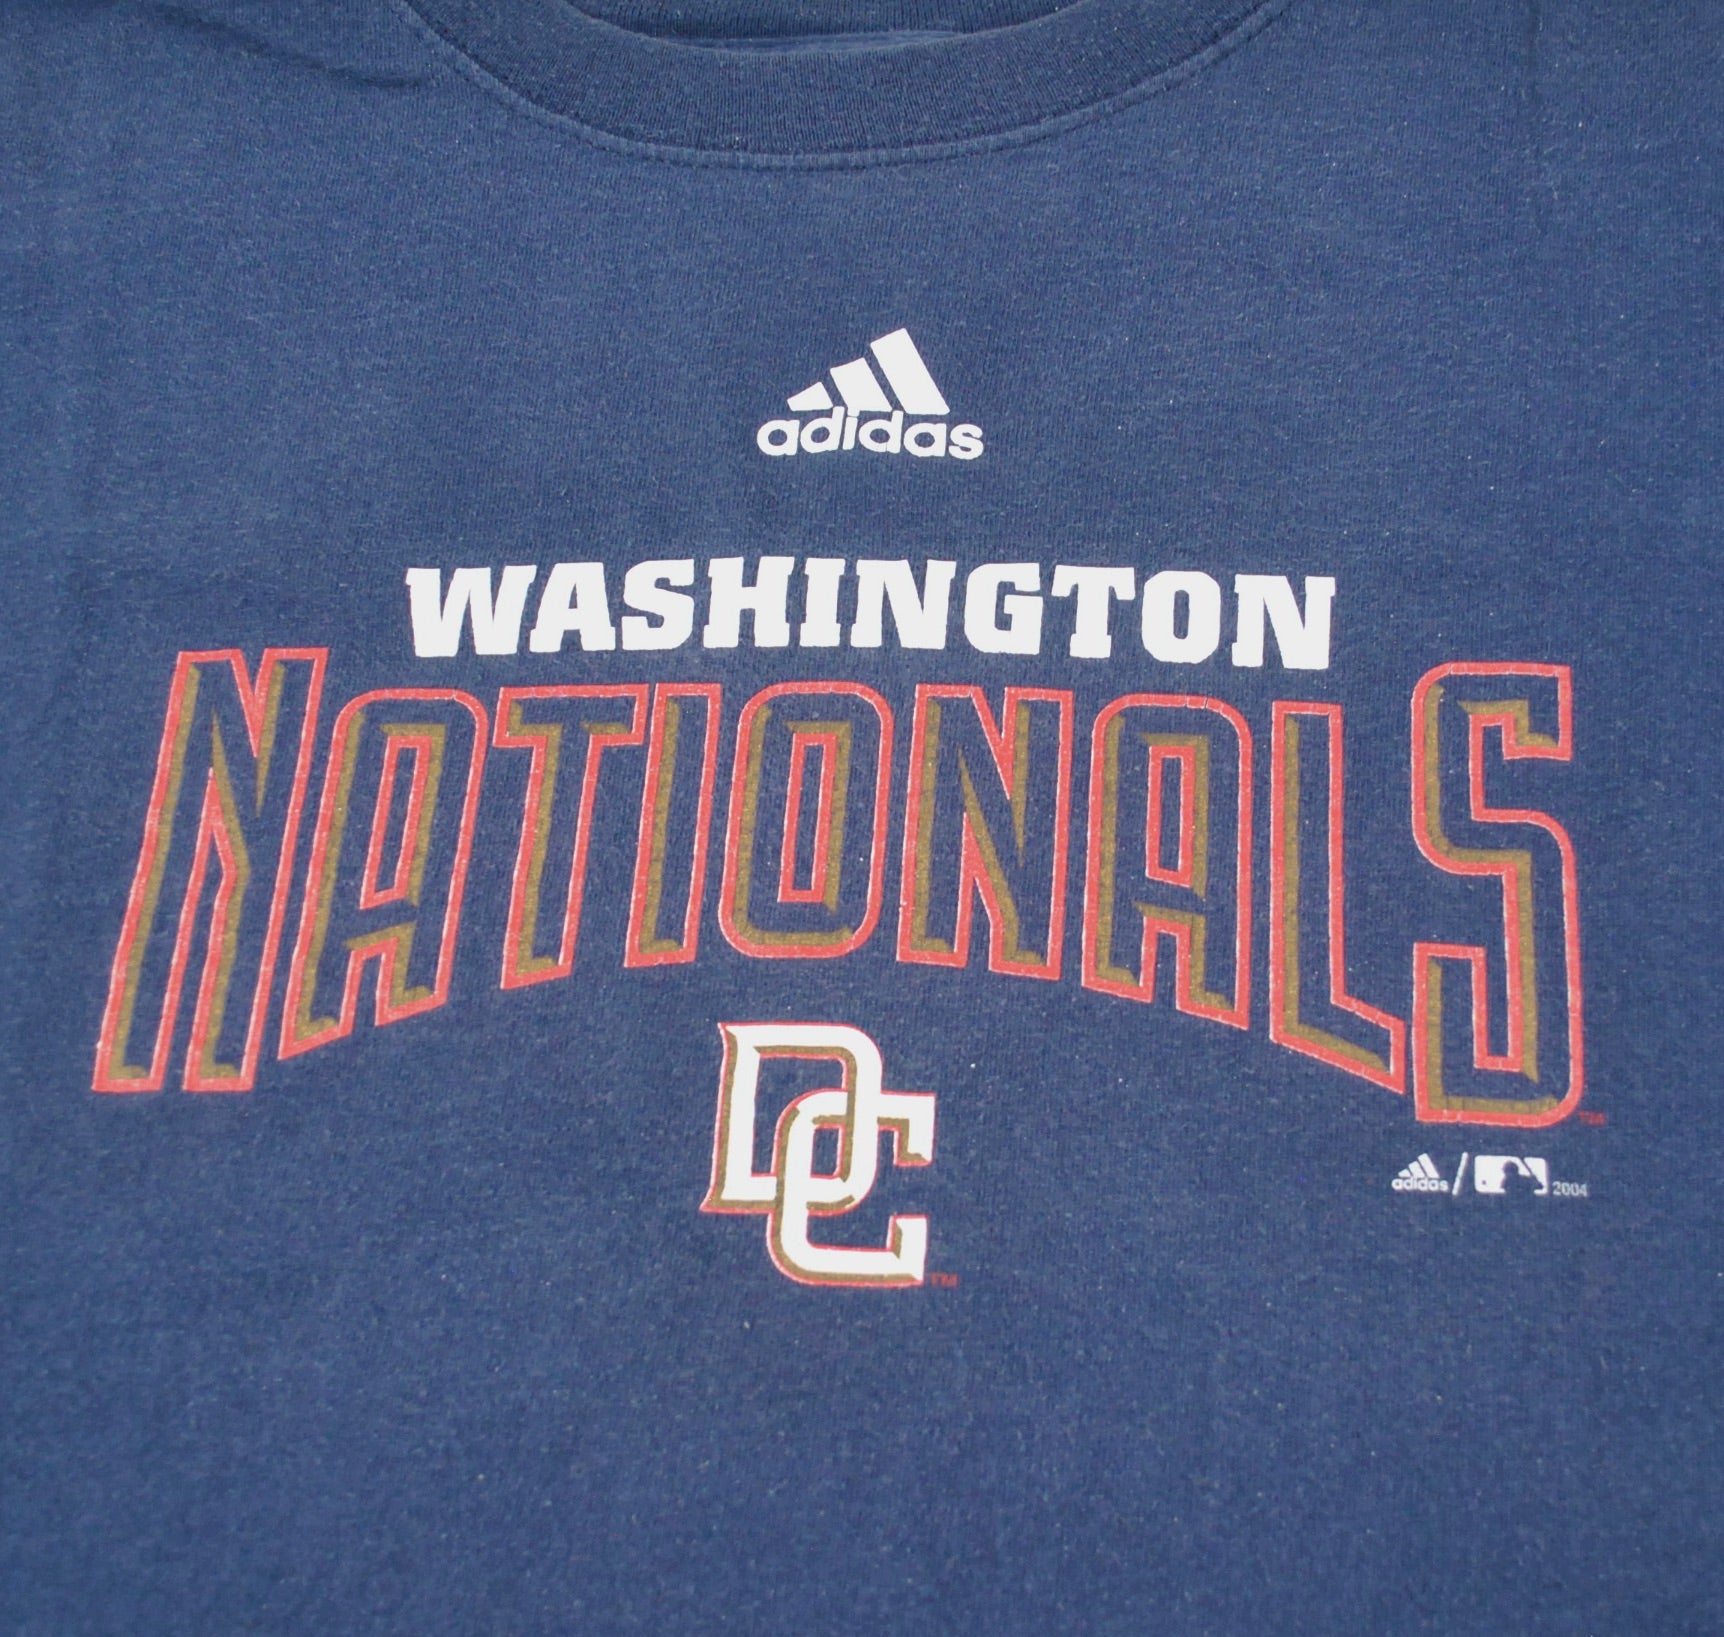 Vintage Washington Nationals 2004 Inaugural Season Adidas Shirt